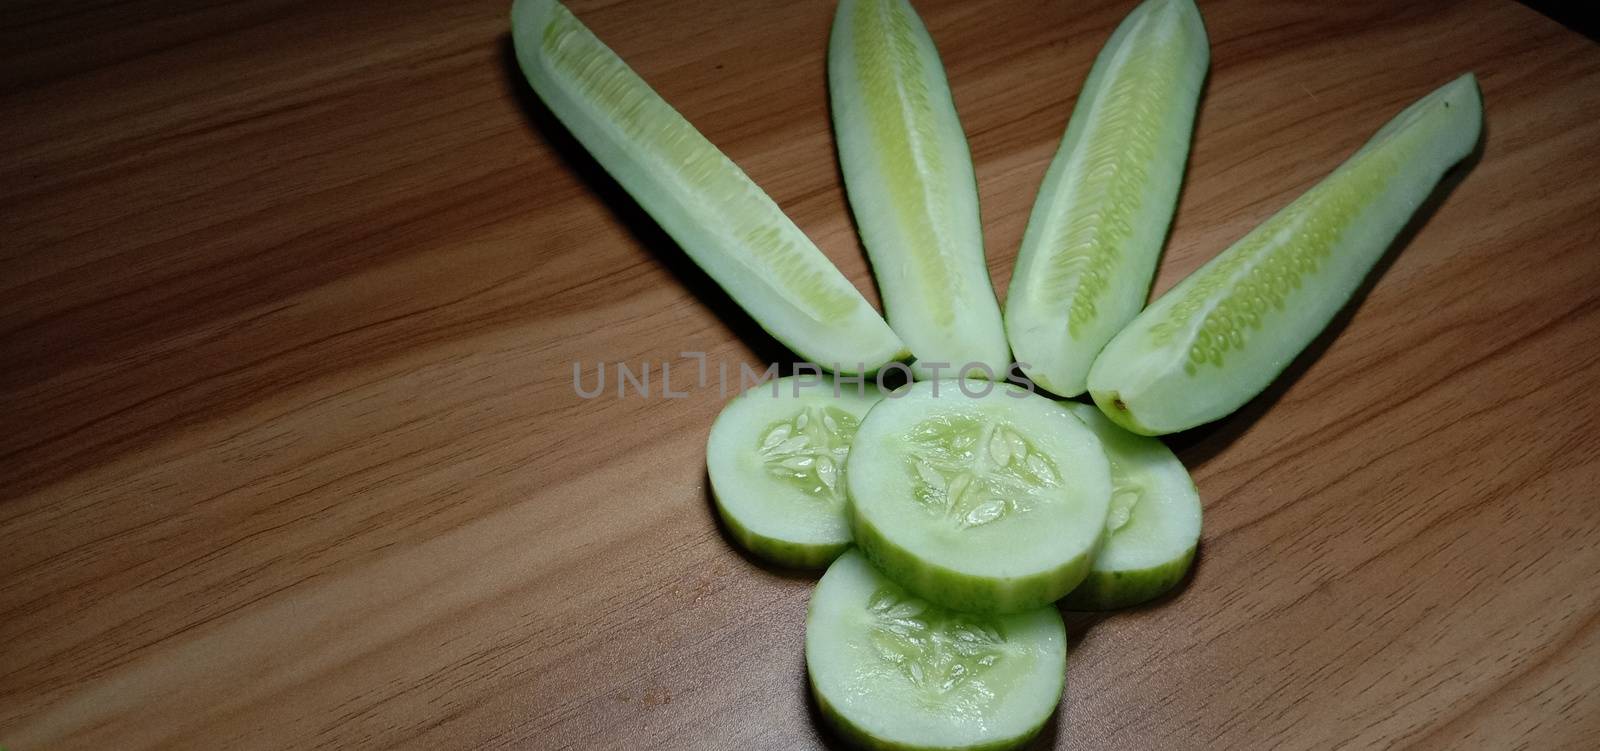 testy and healthy fresh cucumber by jahidul2358